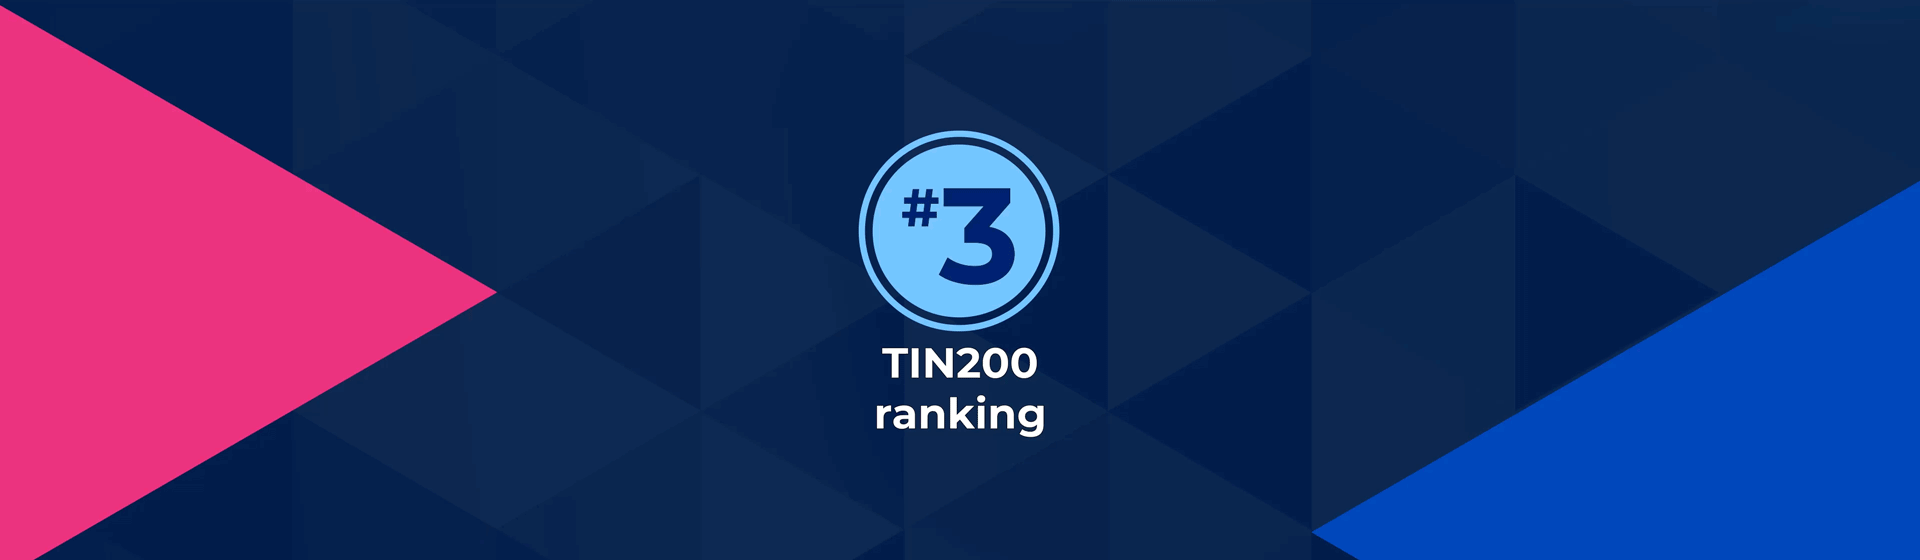 Number 3 TIN2000 ranking